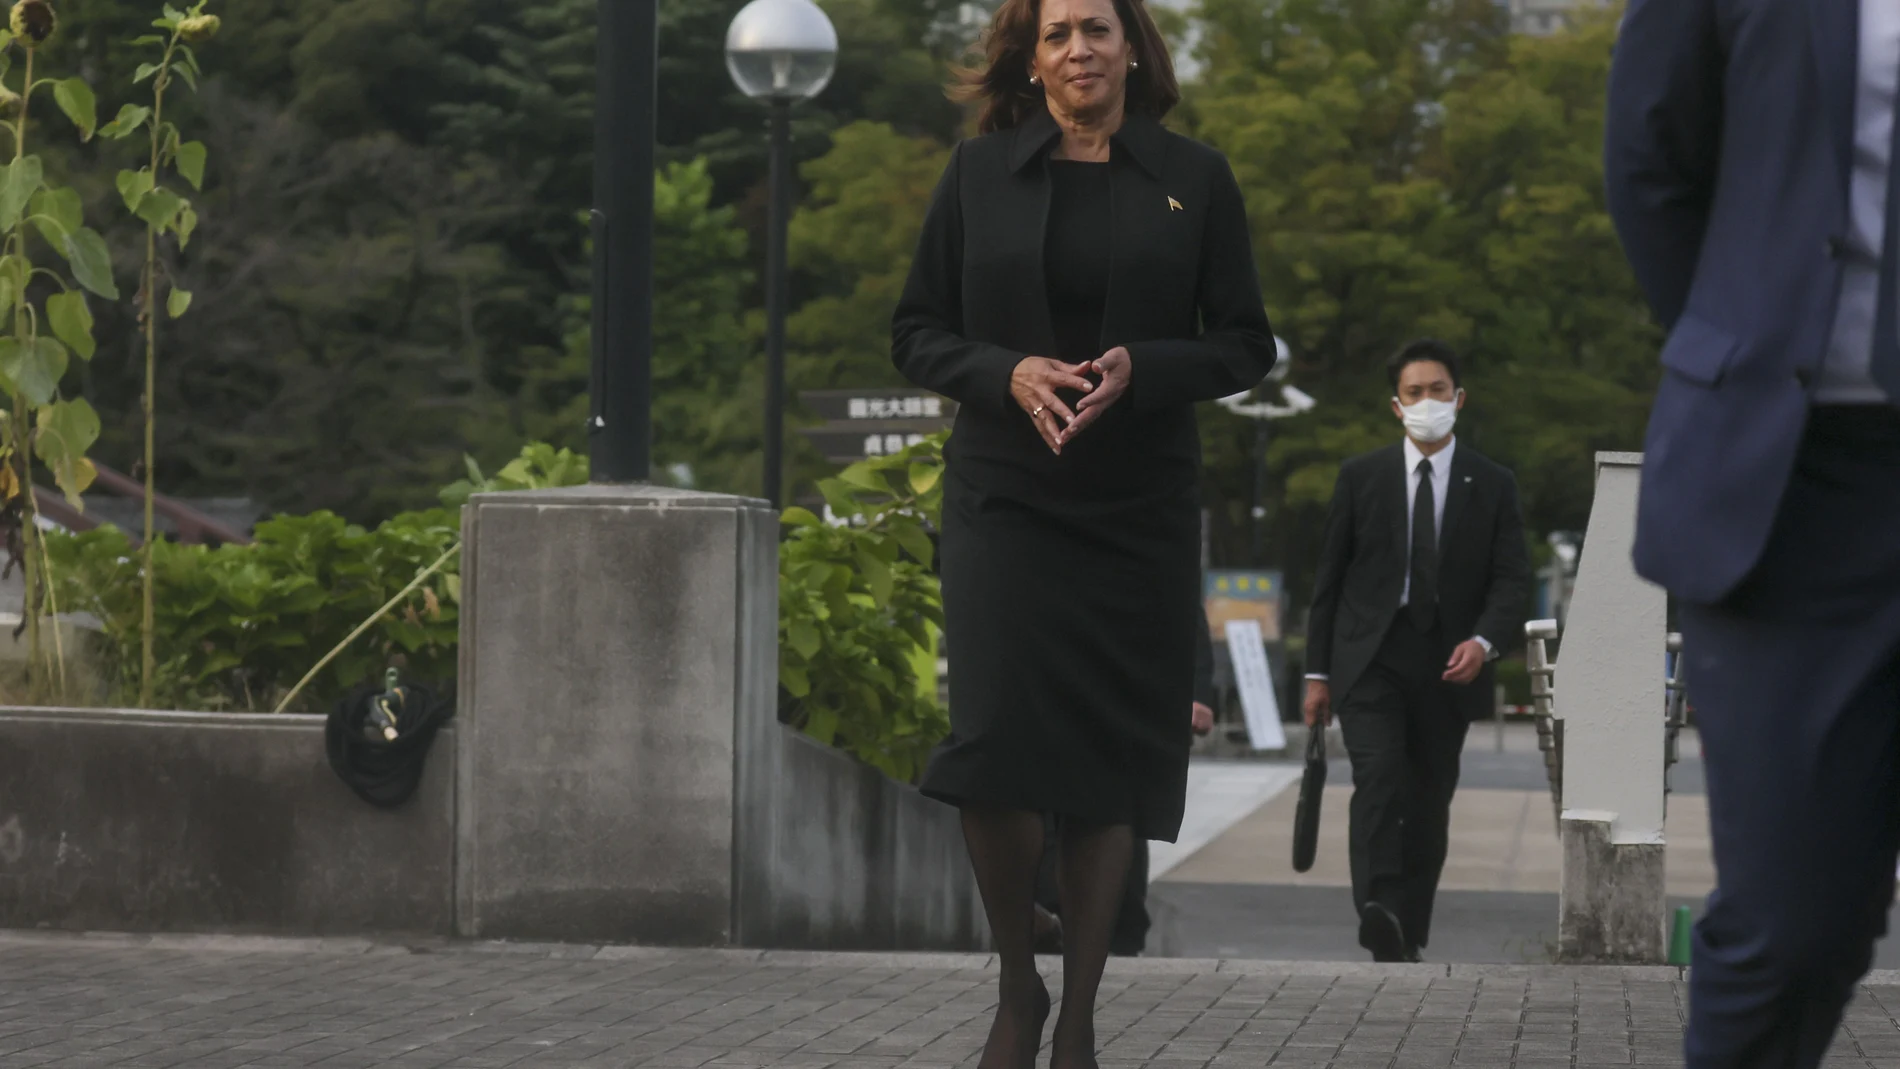 La vicepresidenta de EE. UU., Kamala Harris, visita el Templo Zojoji el día del funeral de estado del ex primer ministro Shinzo Abe, el martes 27 de septiembre de 2022 en Tokio. (Leah Millis/Foto de la piscina vía AP)